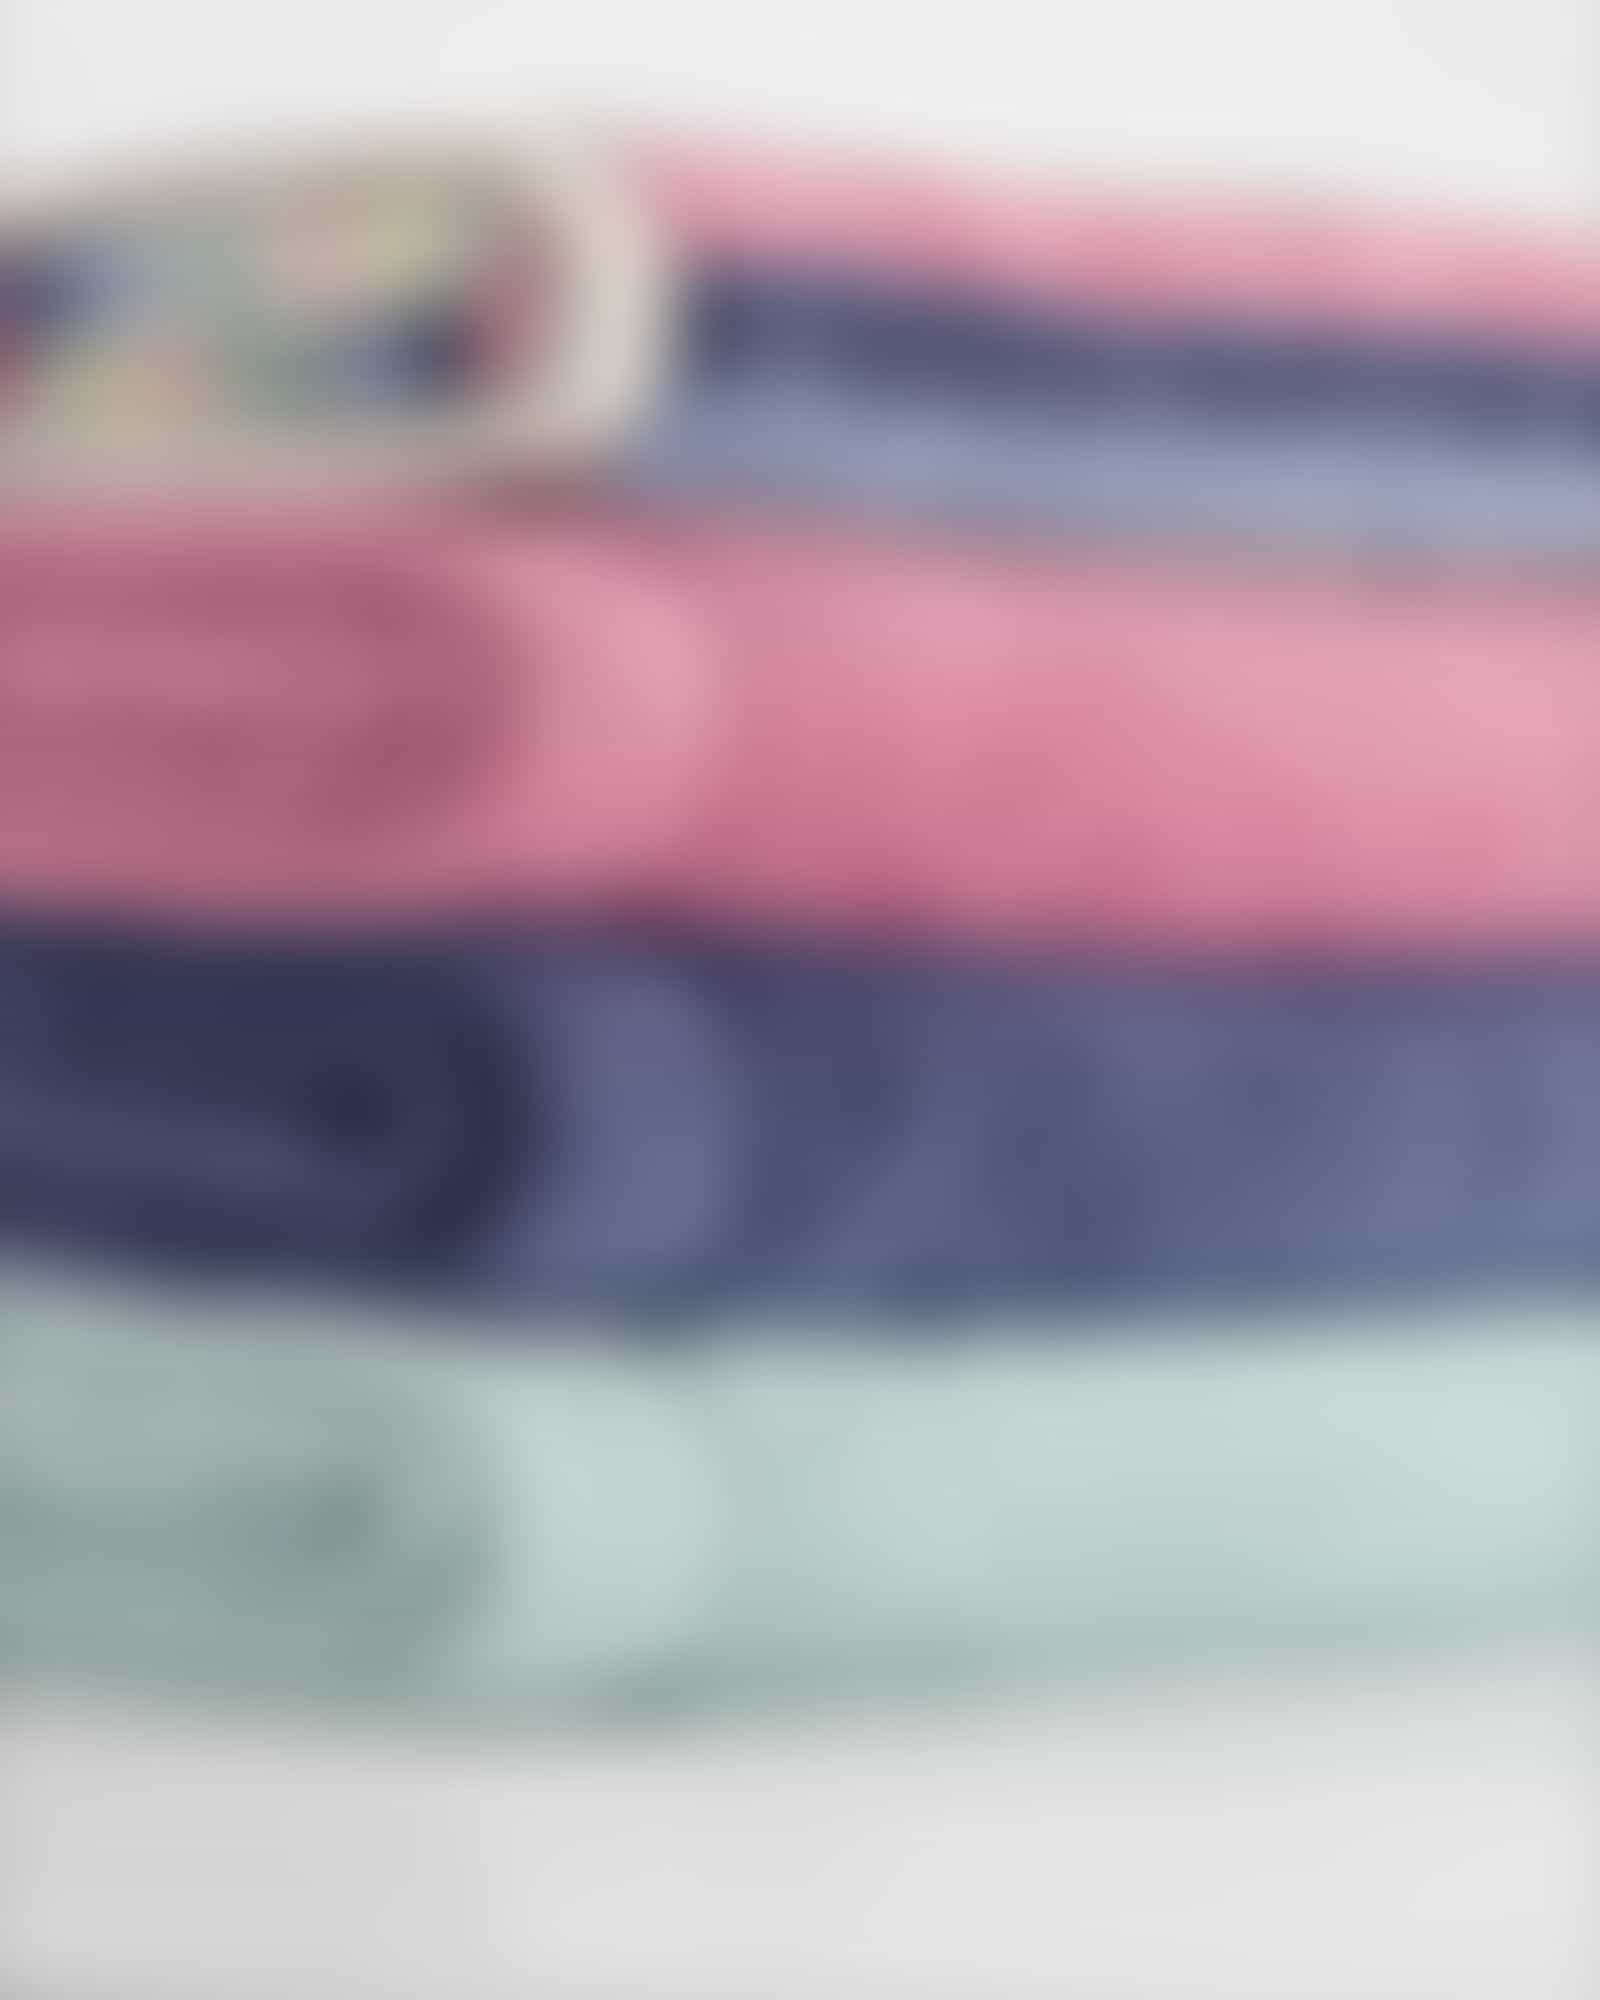 Cawö Handtücher Sense Streifen 6206 - Farbe: multicolor - 12